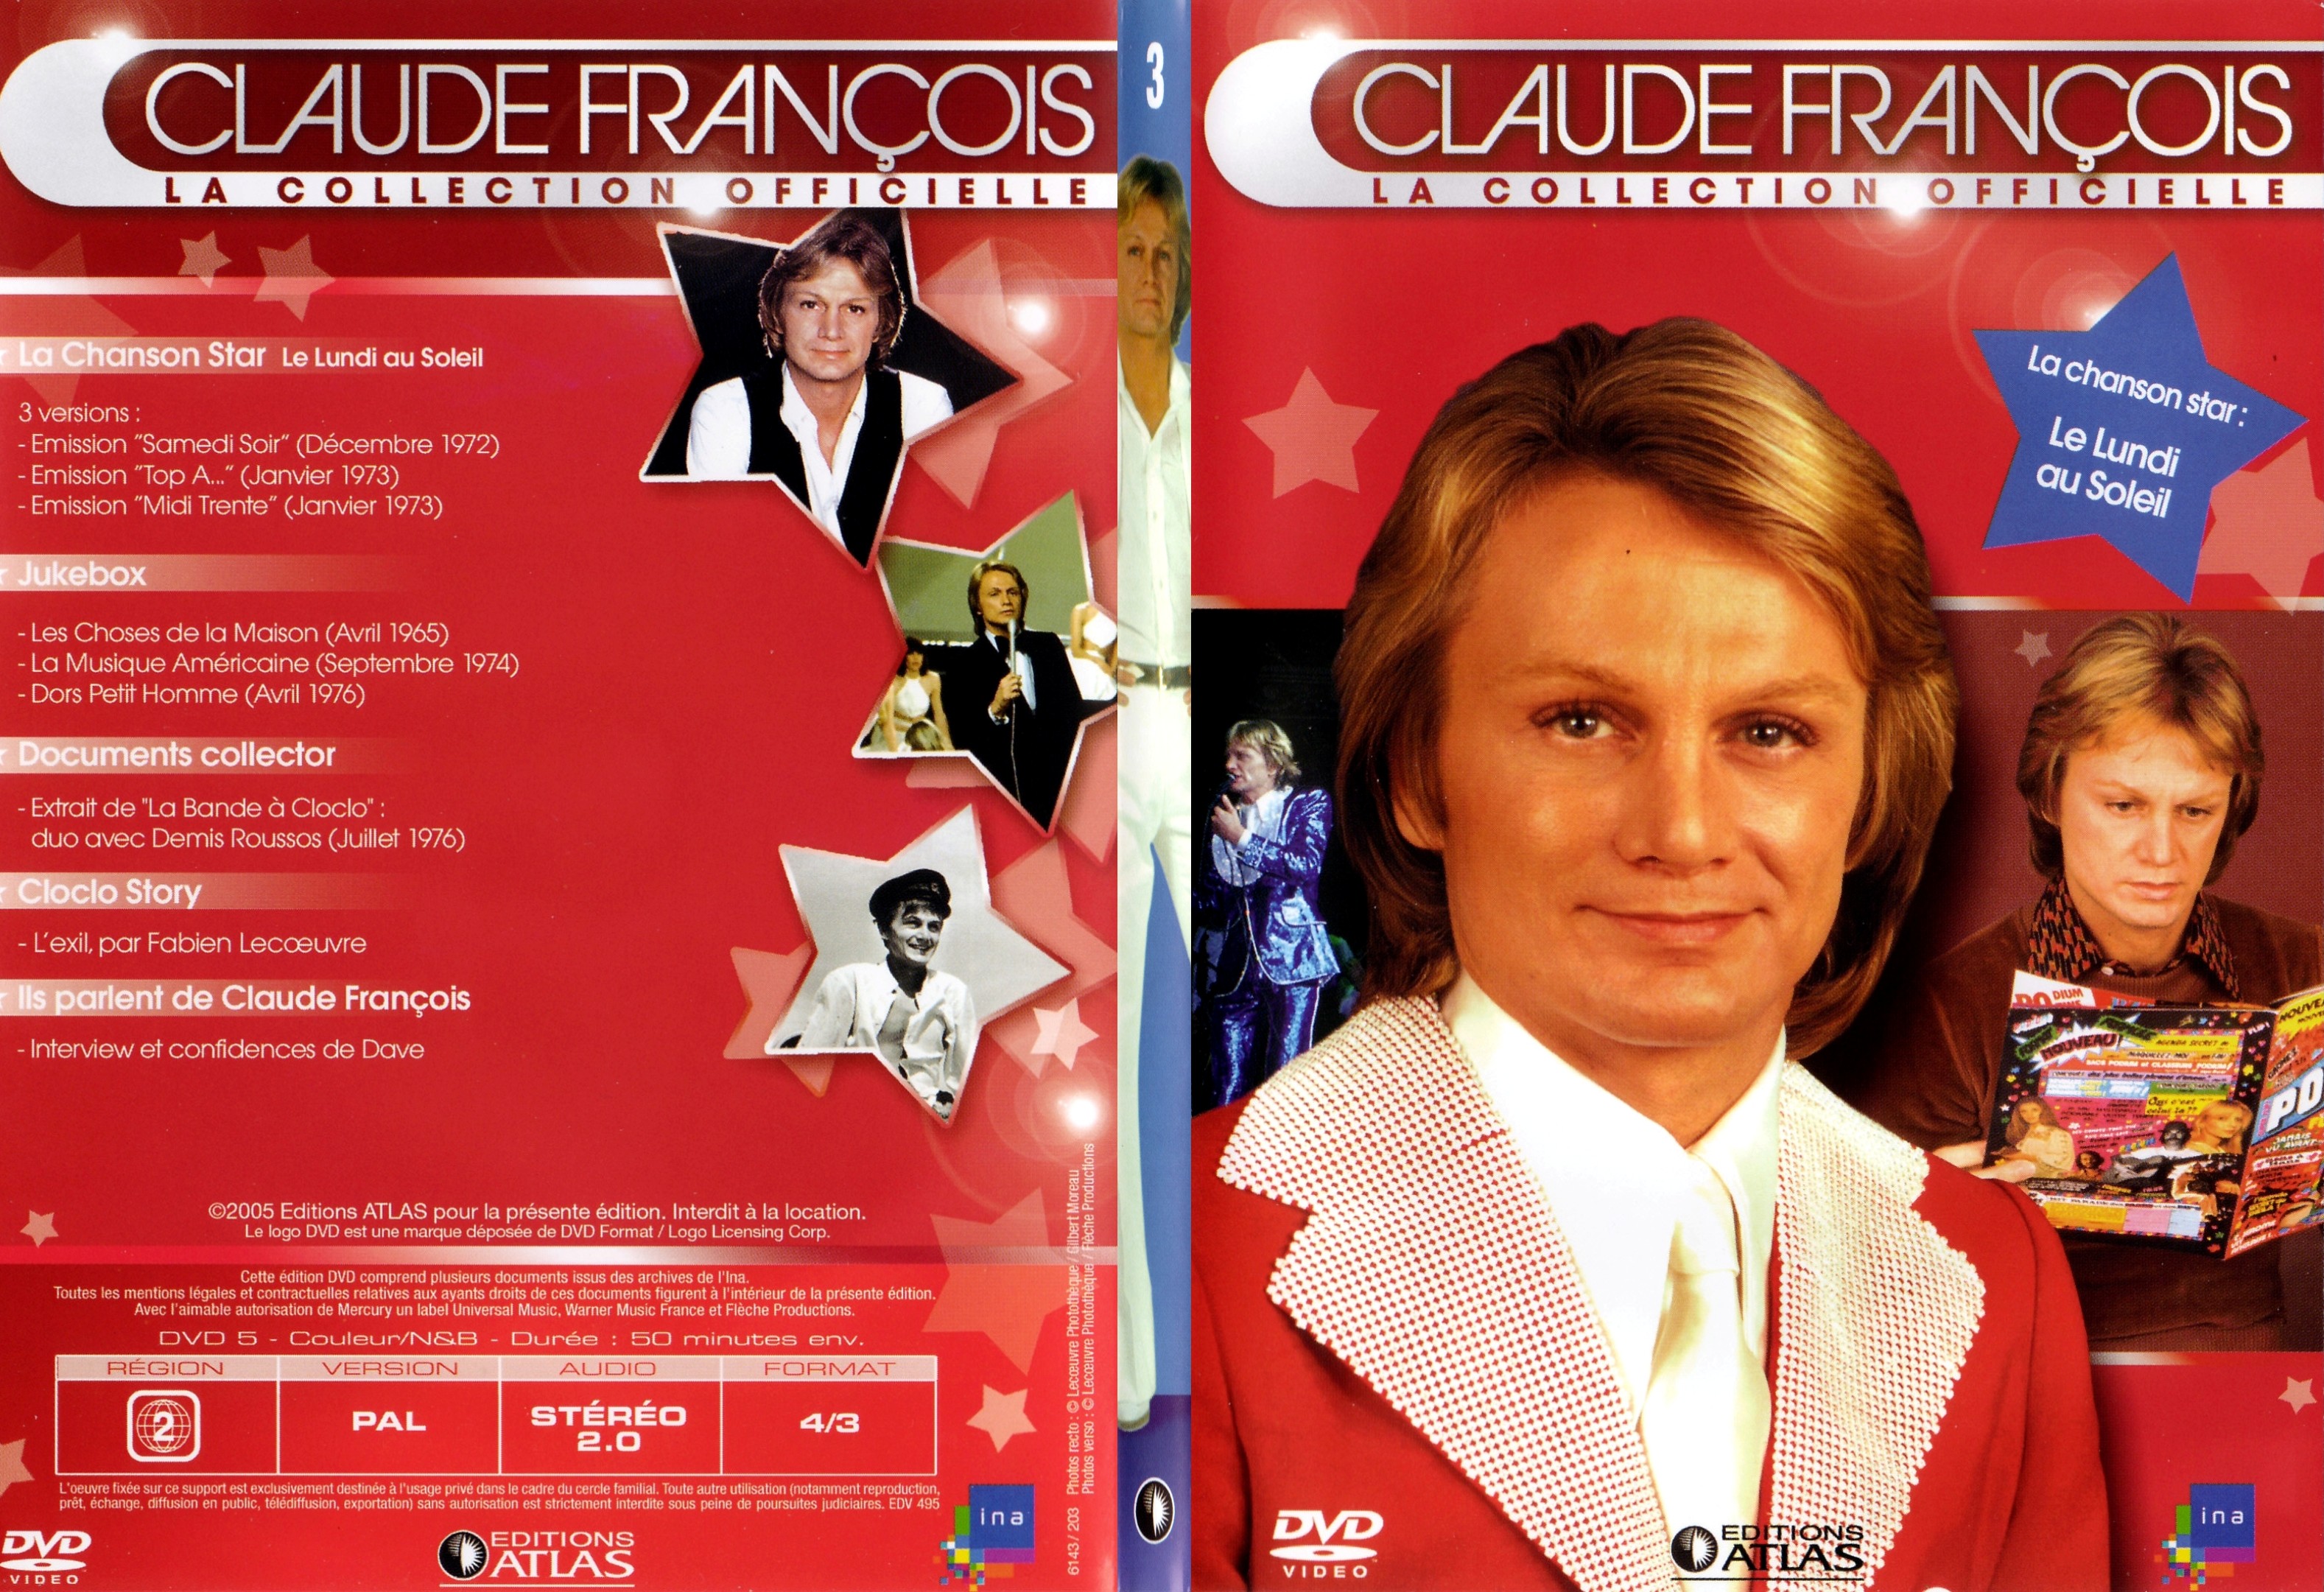 Jaquette DVD Claude francois le collection officielle vol 03 - SLIM